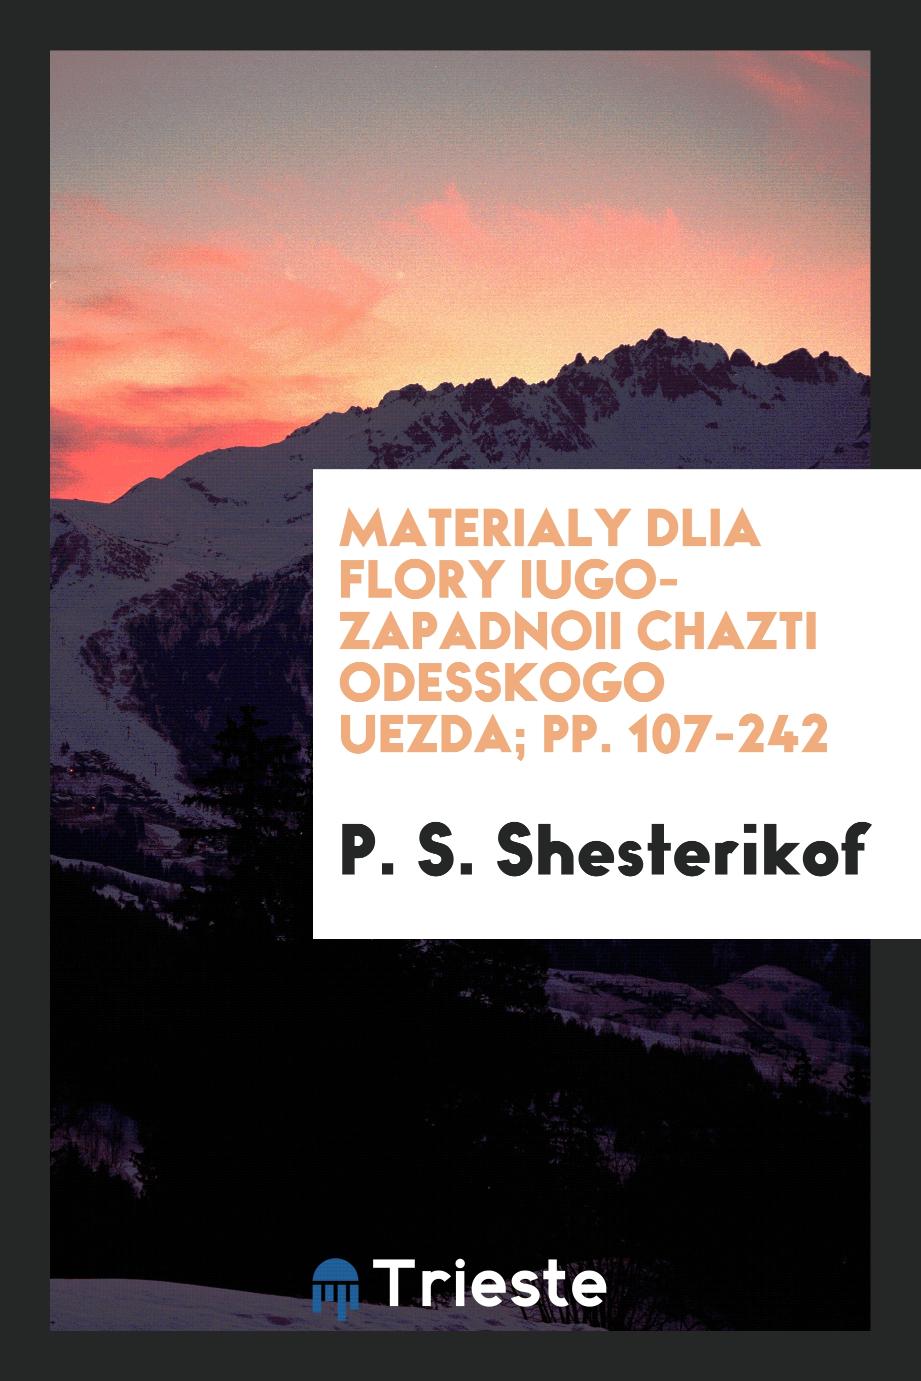 Materialy Dlia Flory Iugo-Zapadnoii Chazti Odesskogo Uezda; pp. 107-242